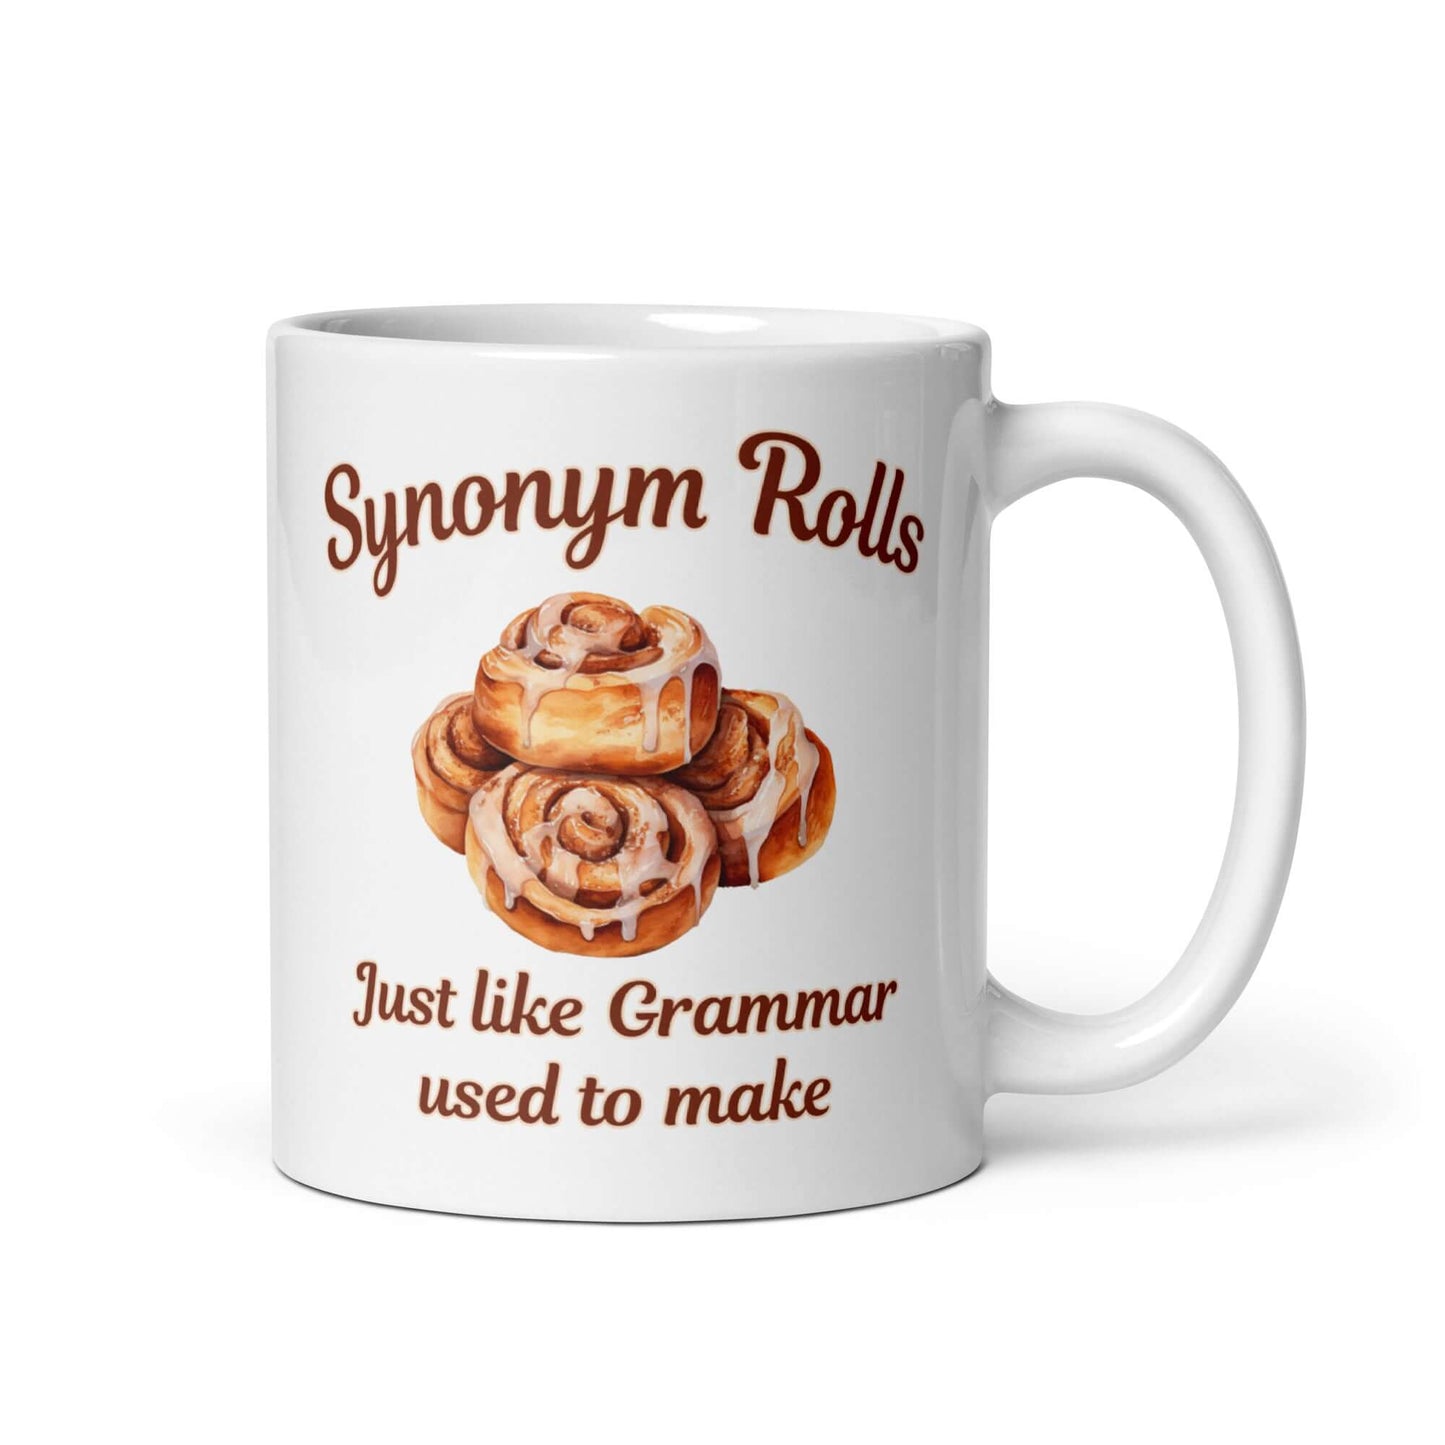 Cinnamon rolls funny mug. Synonym rolls like grammar made ceramic coffee mug